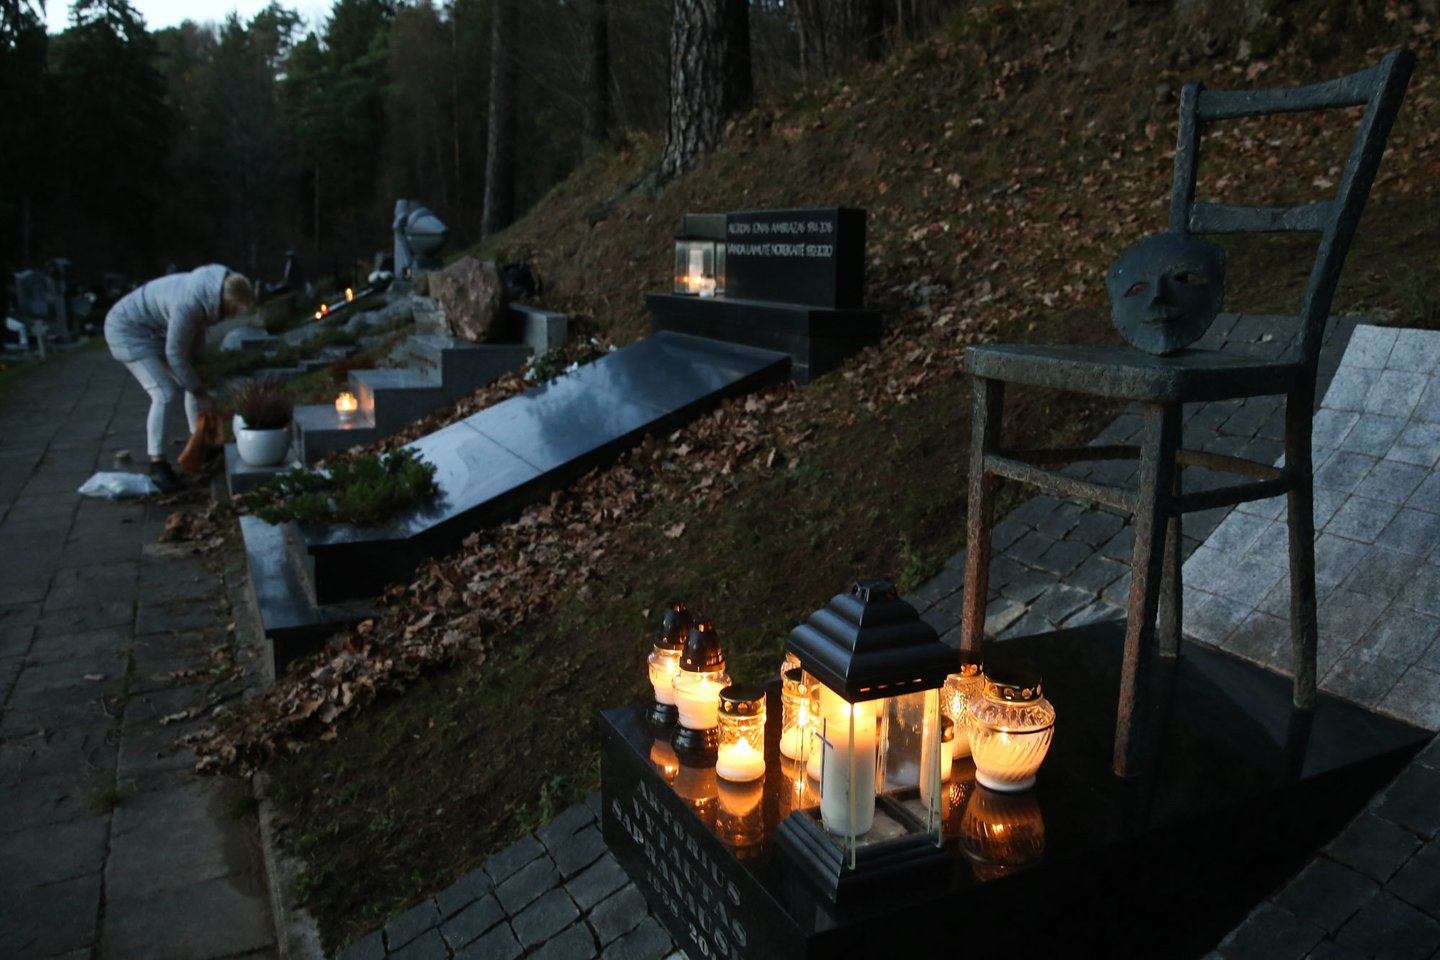 Kadangi lankomų kapų kiekviena šeima turi kelis ar net keliolika, žvakių perkama dešimtimis.<br>R.Danisevičiaus nuotr.